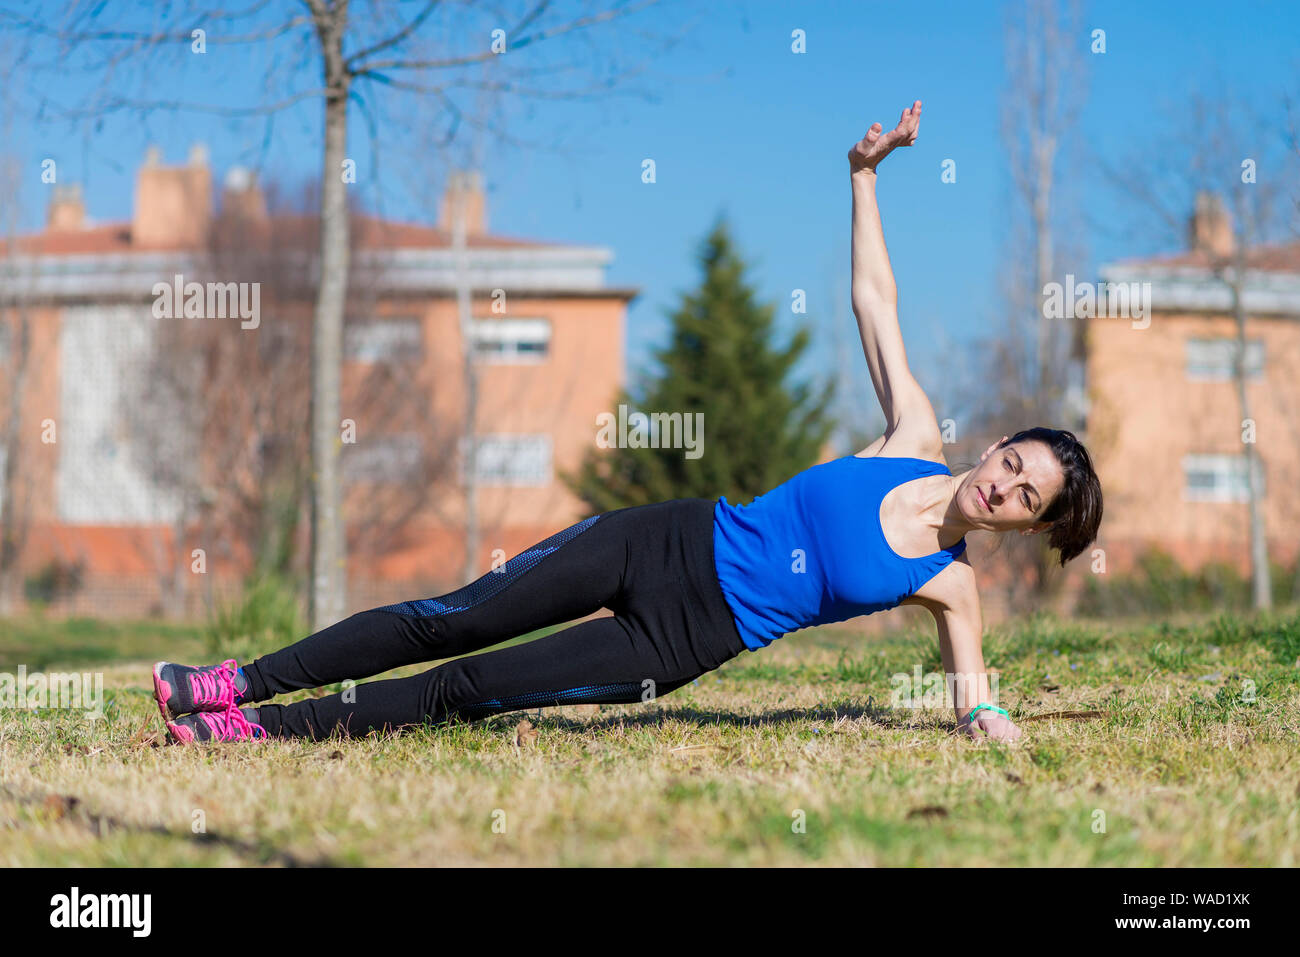 Frau mit Pferdeschwanz stretching auf einem Park Gras an einem sonnigen Tag Stockfoto